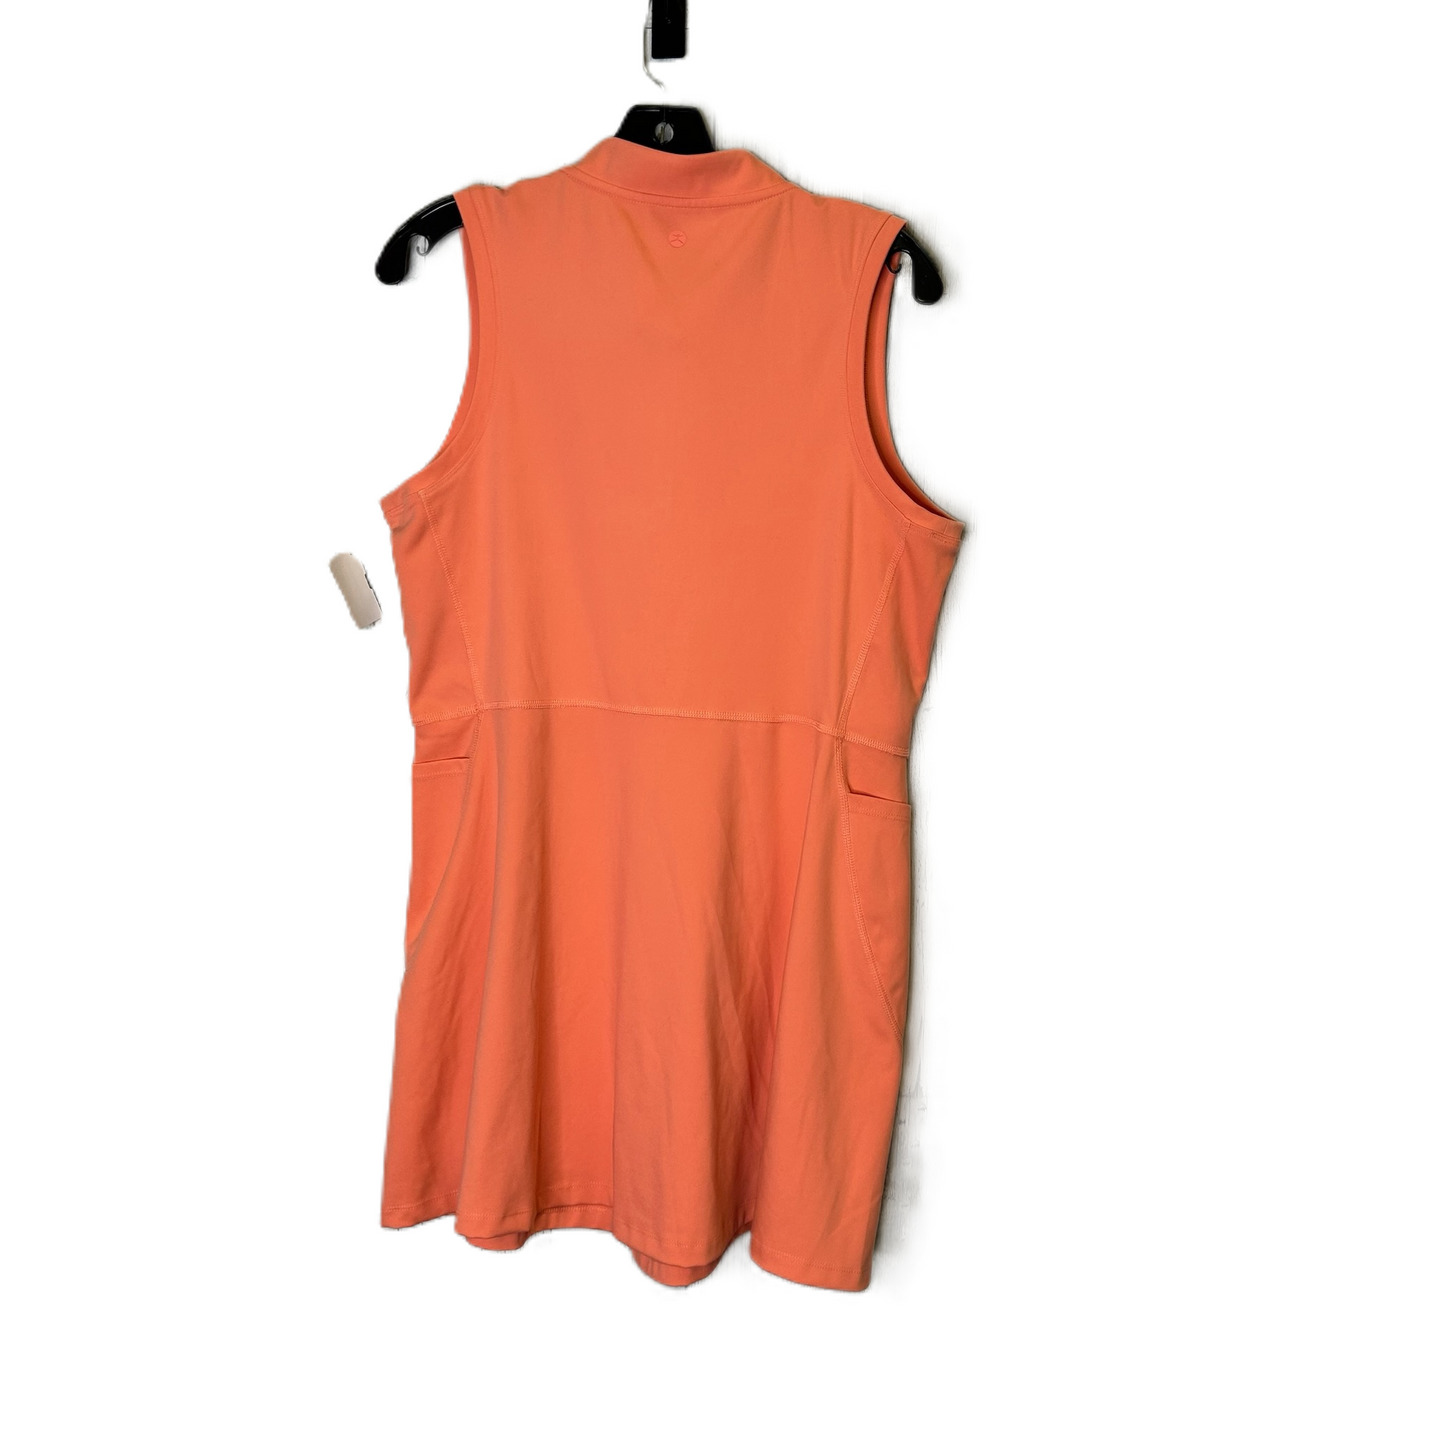 Orange Athletic Dress By Danskin, Size: L